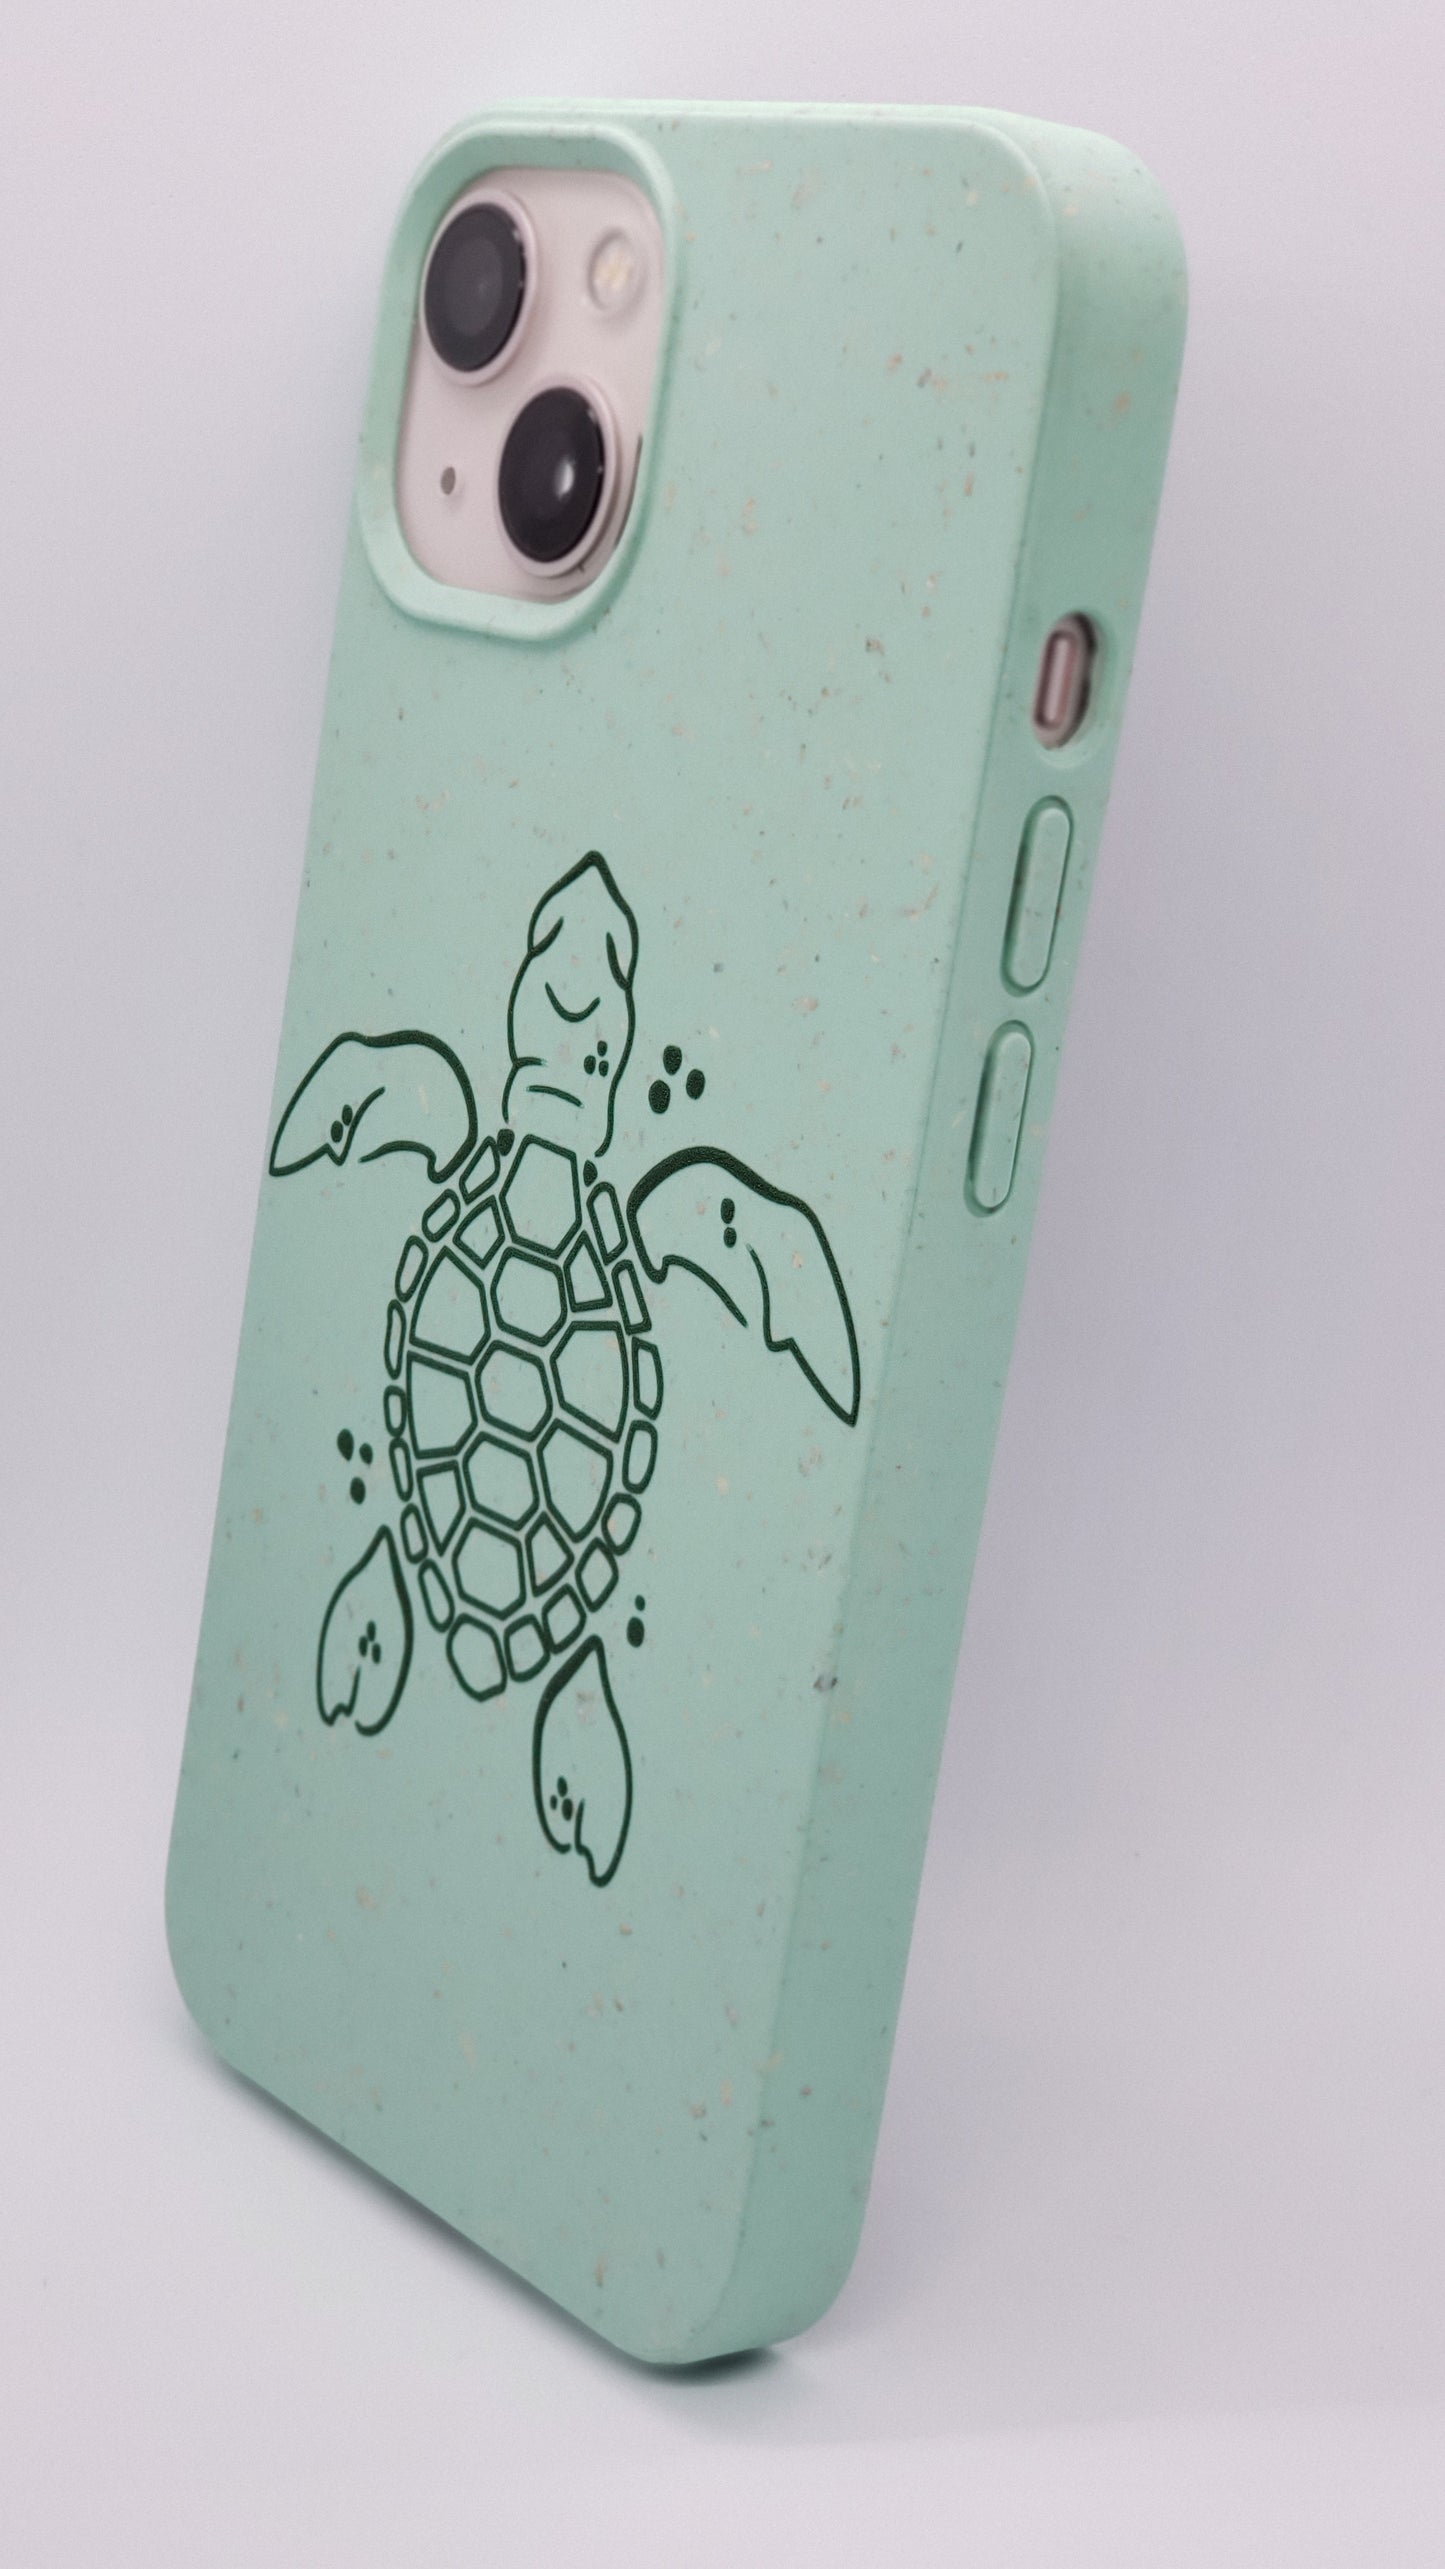 Coque iPhone compostable biodégradable tortue verte de l'océan